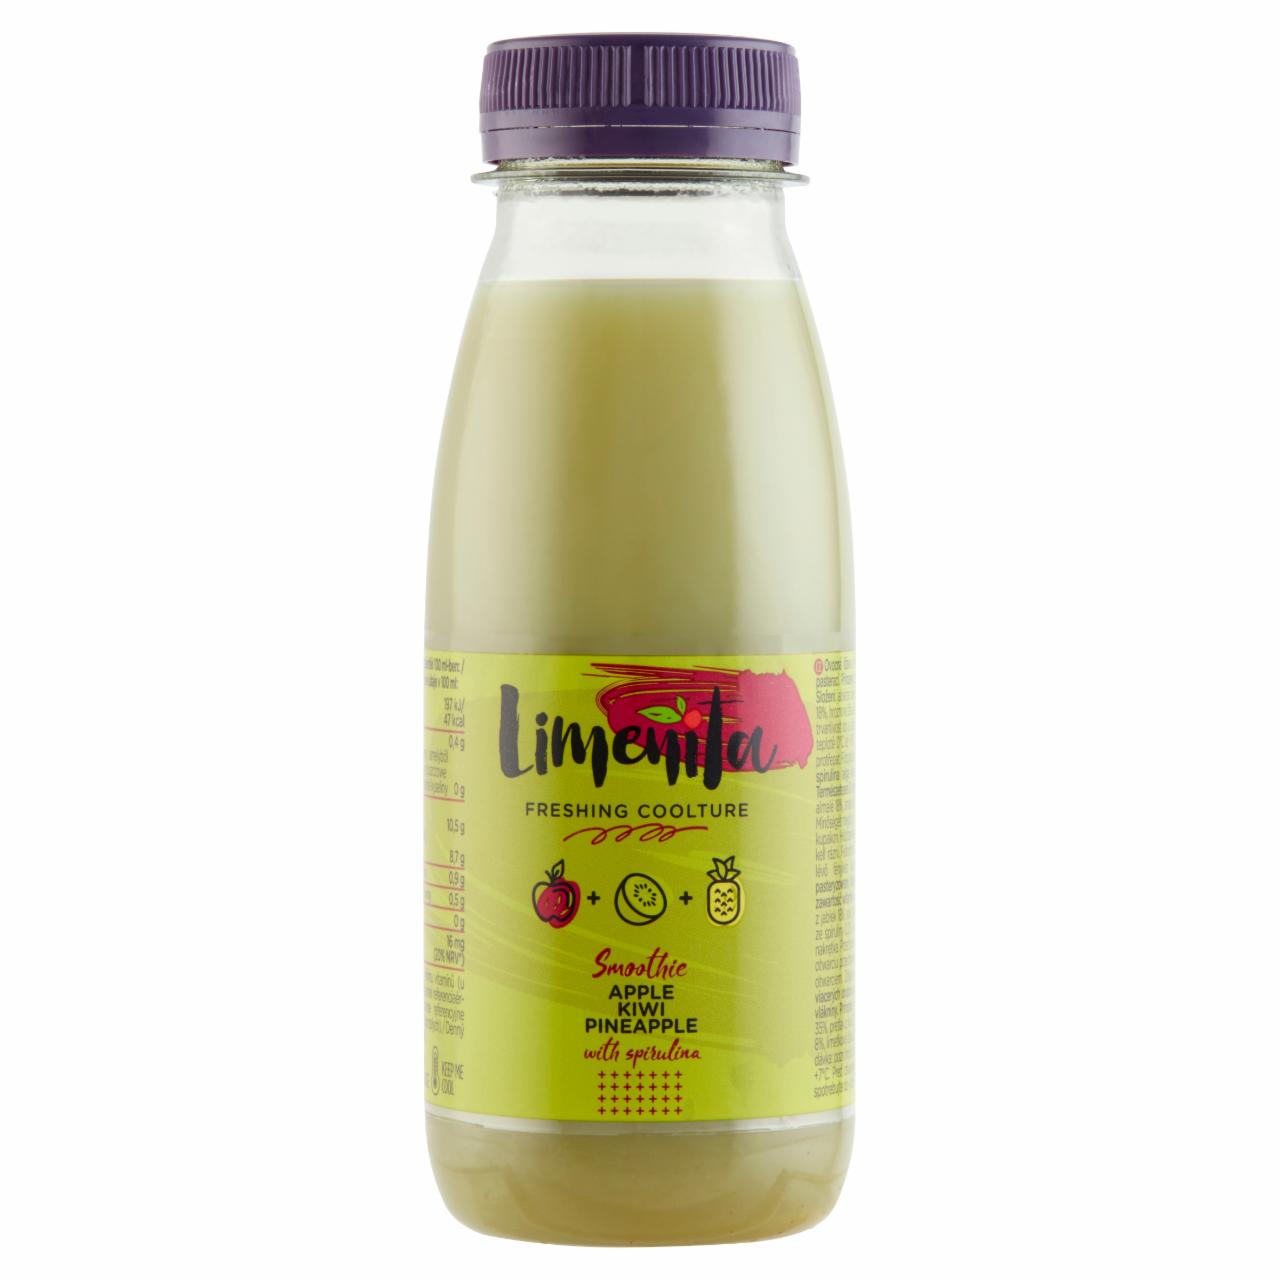 Képek - Limeñita Apple-Kiwi-Pineapple gyümölcslé többféle gyümölcsből, spirulina alga kivonattal 250 ml